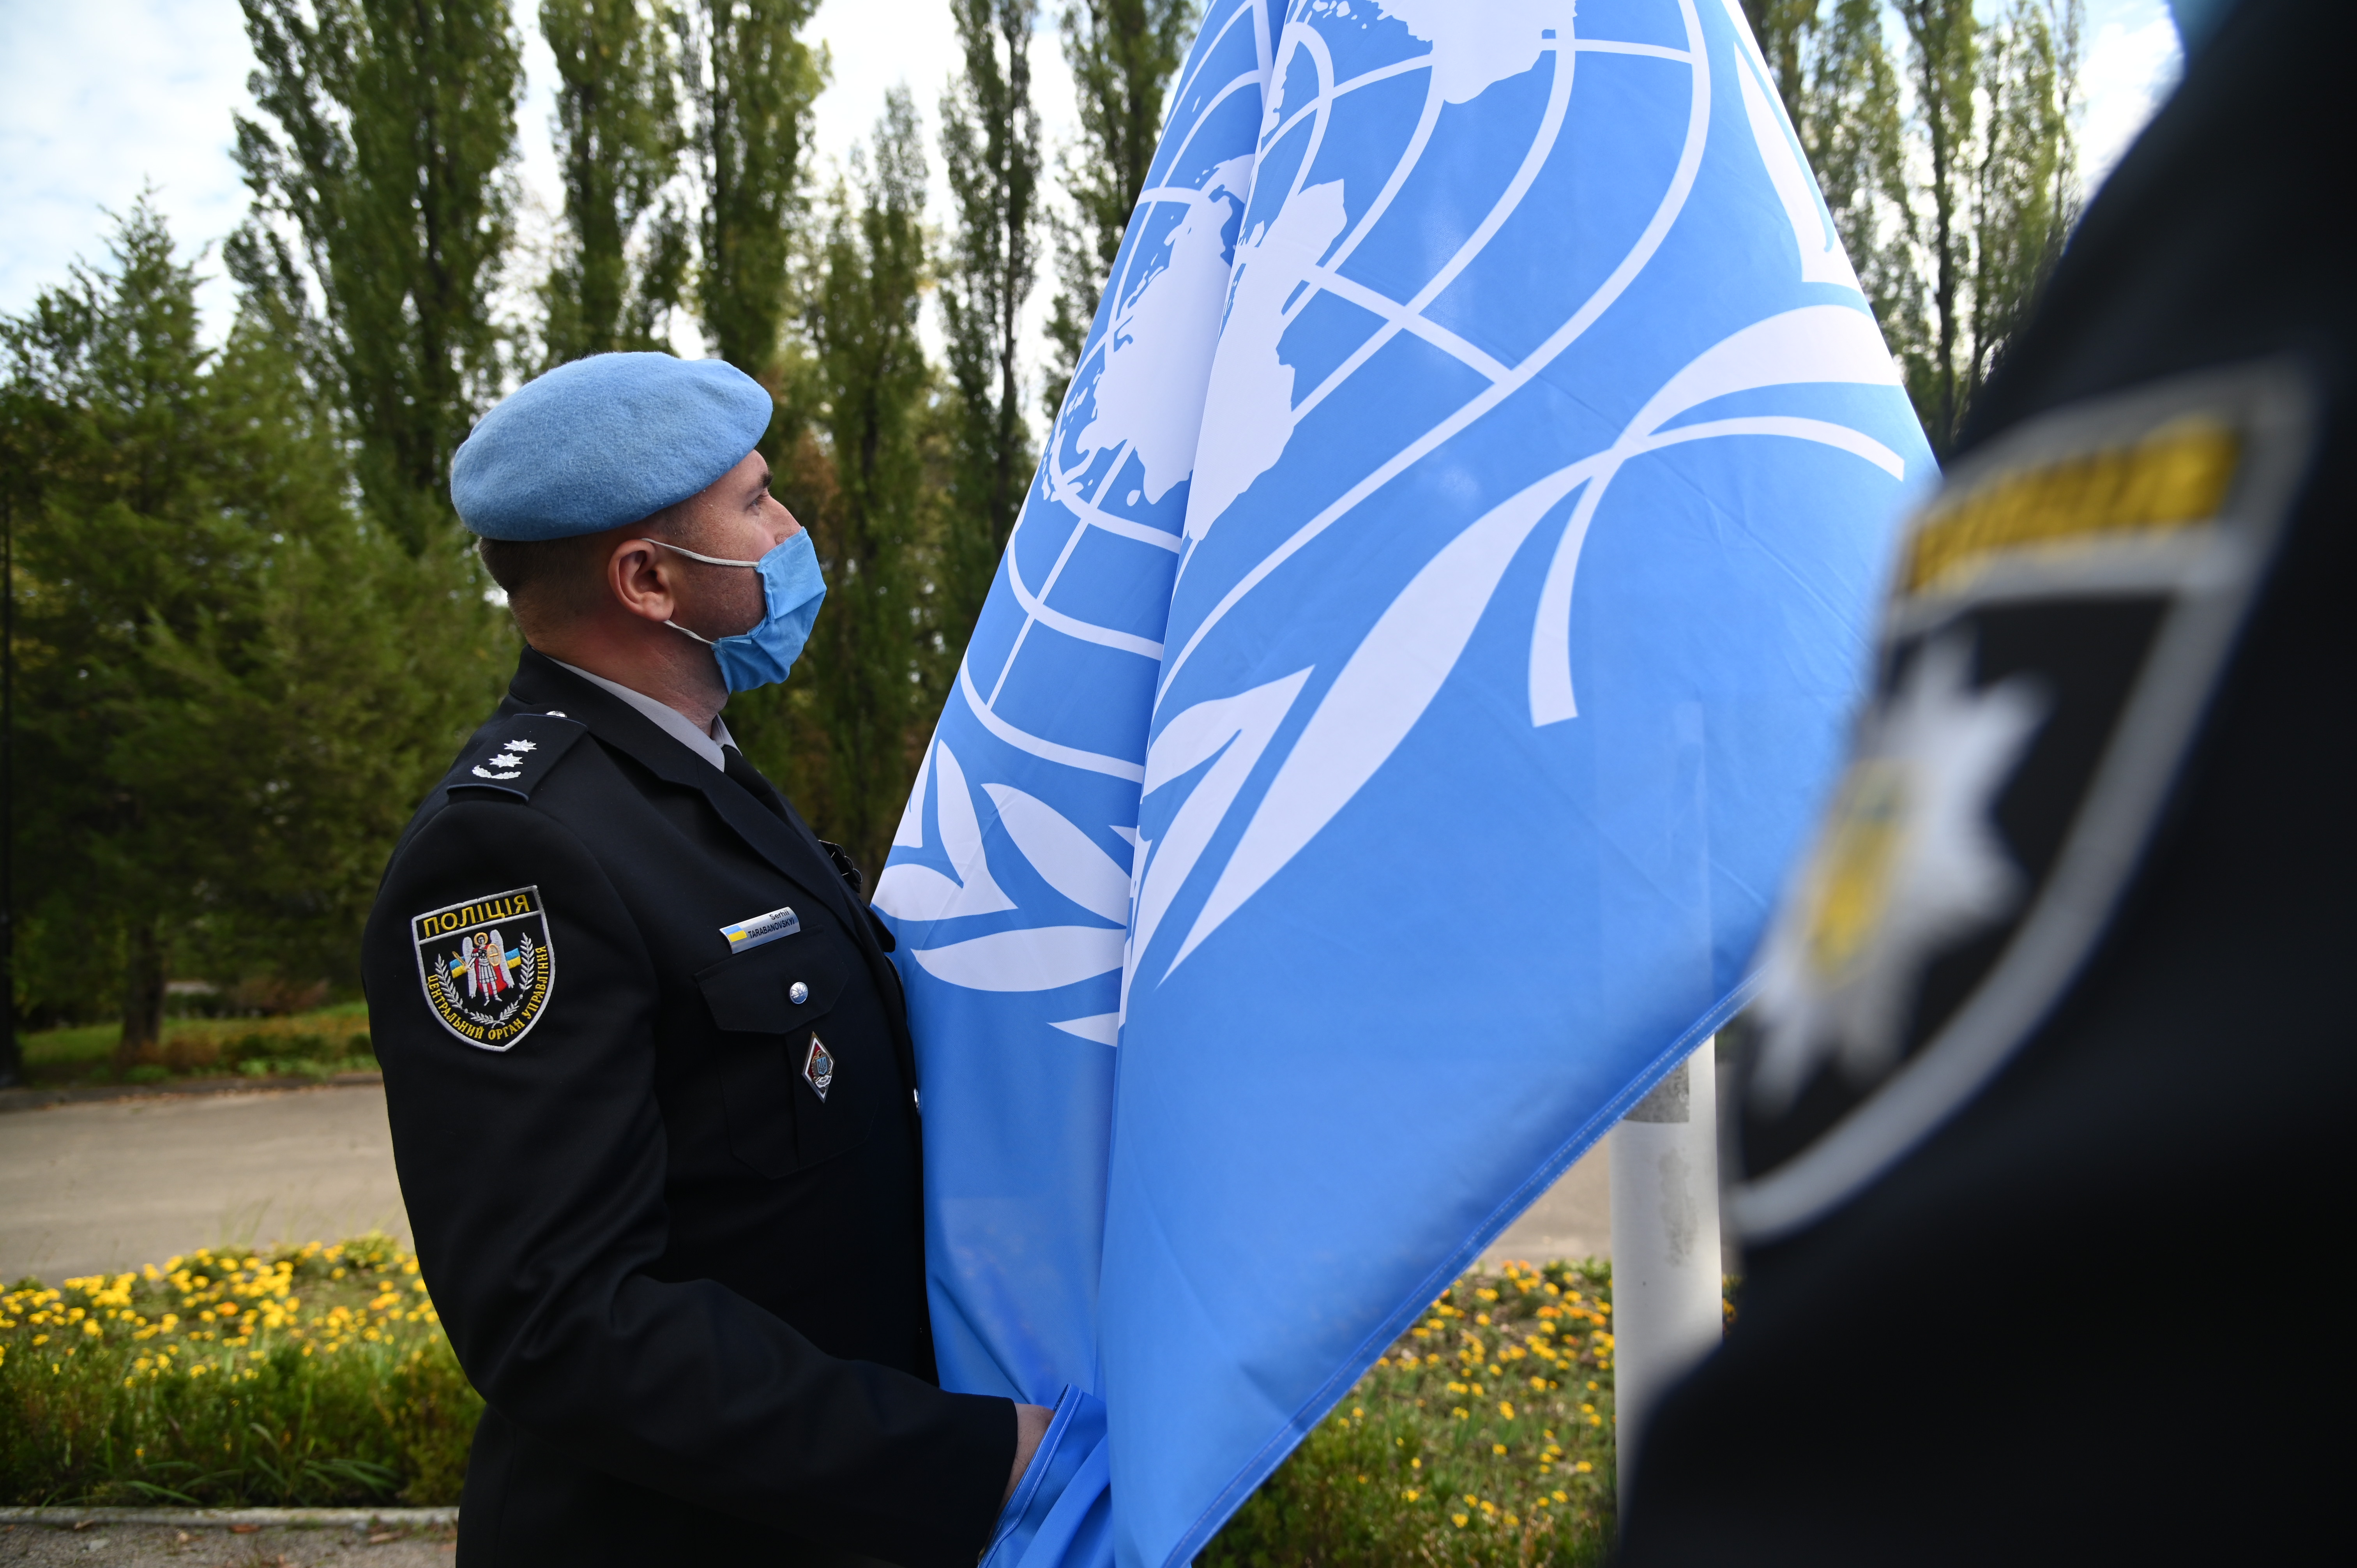 UN75 ceremony in Ukraine in images